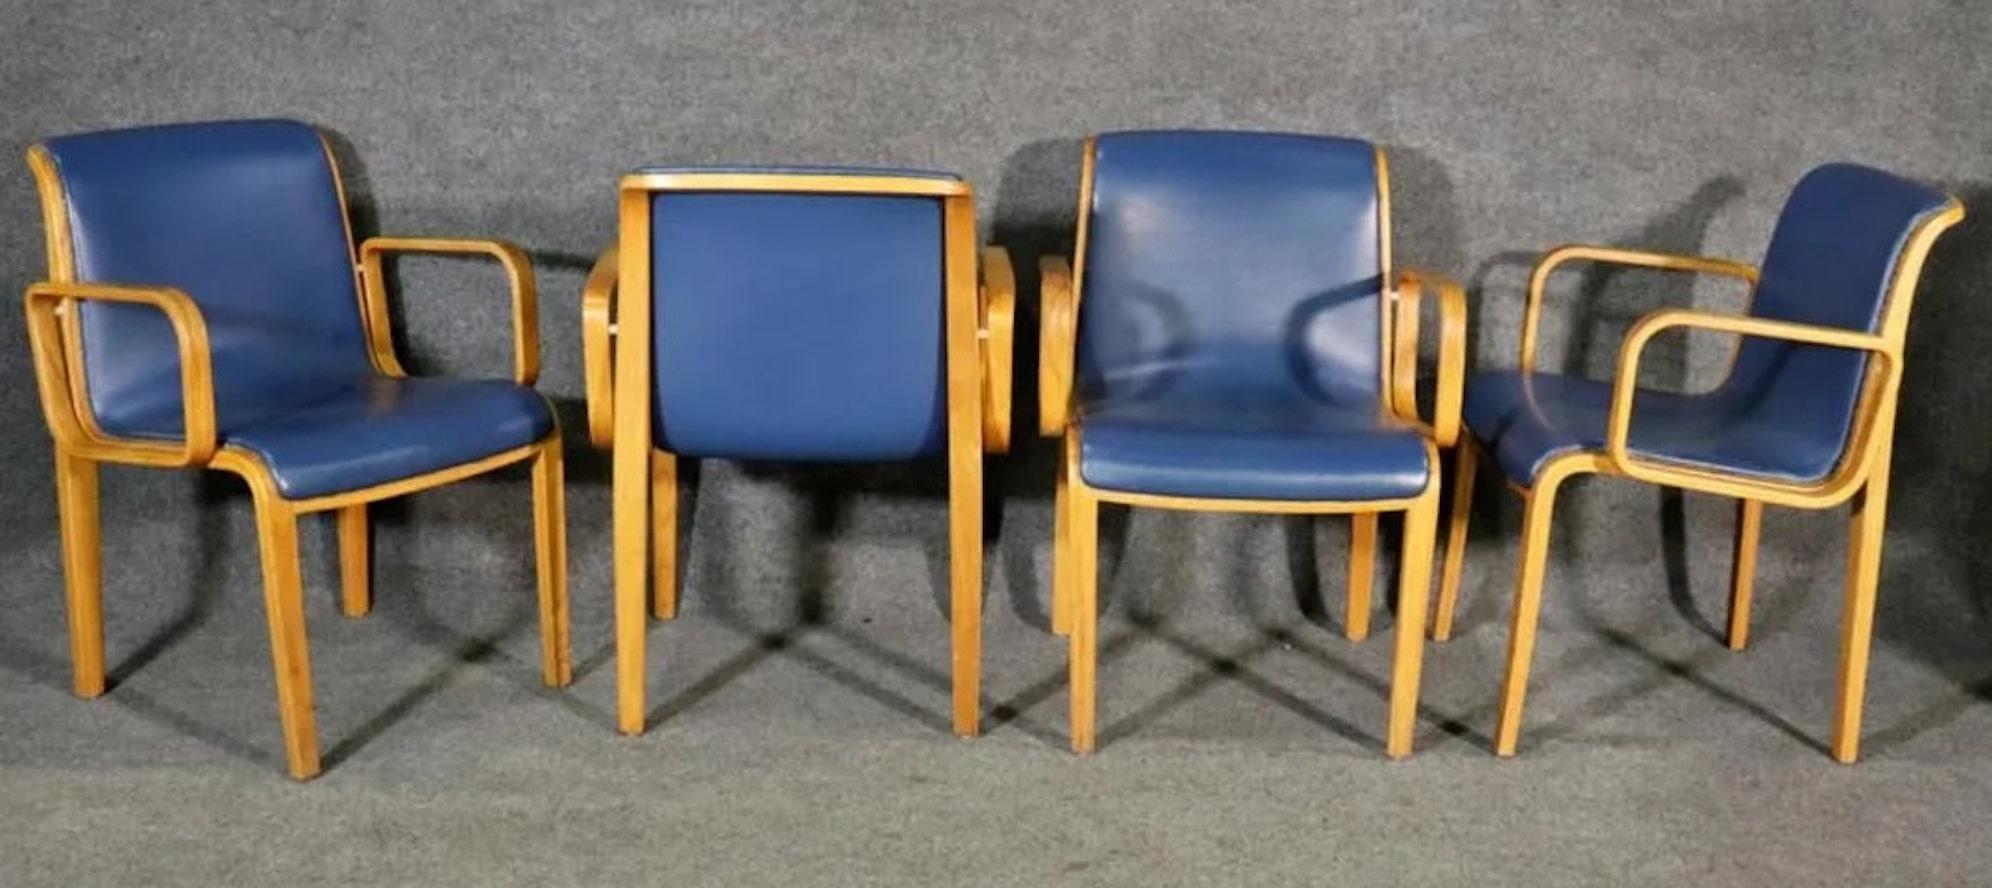 Quatre Bill Stephens pour Knoll, deux chaises Stending Co. Le tout dans la même sellerie avec des accoudoirs en bois courbé.
4 chaises mesurent 31 1/2